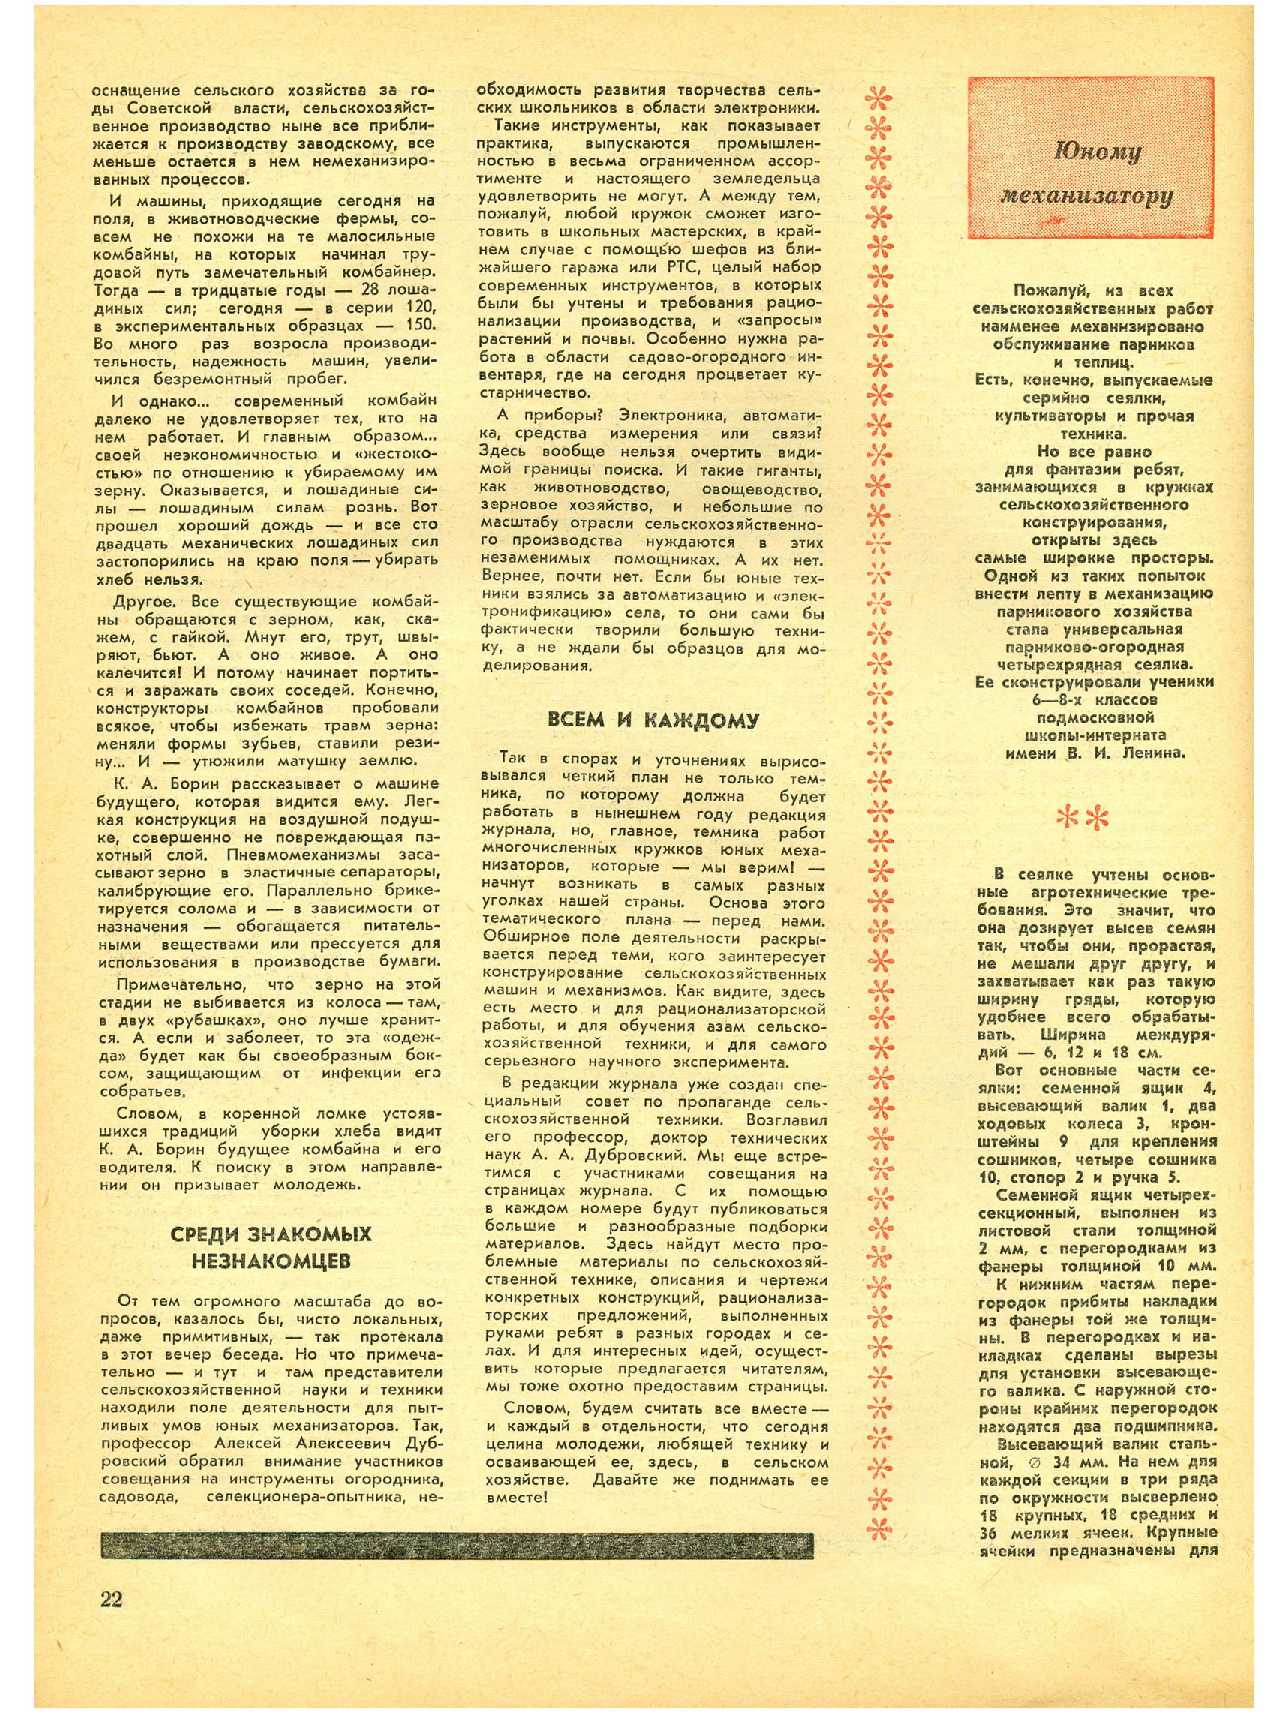 МК 1, 1971, 22 c.